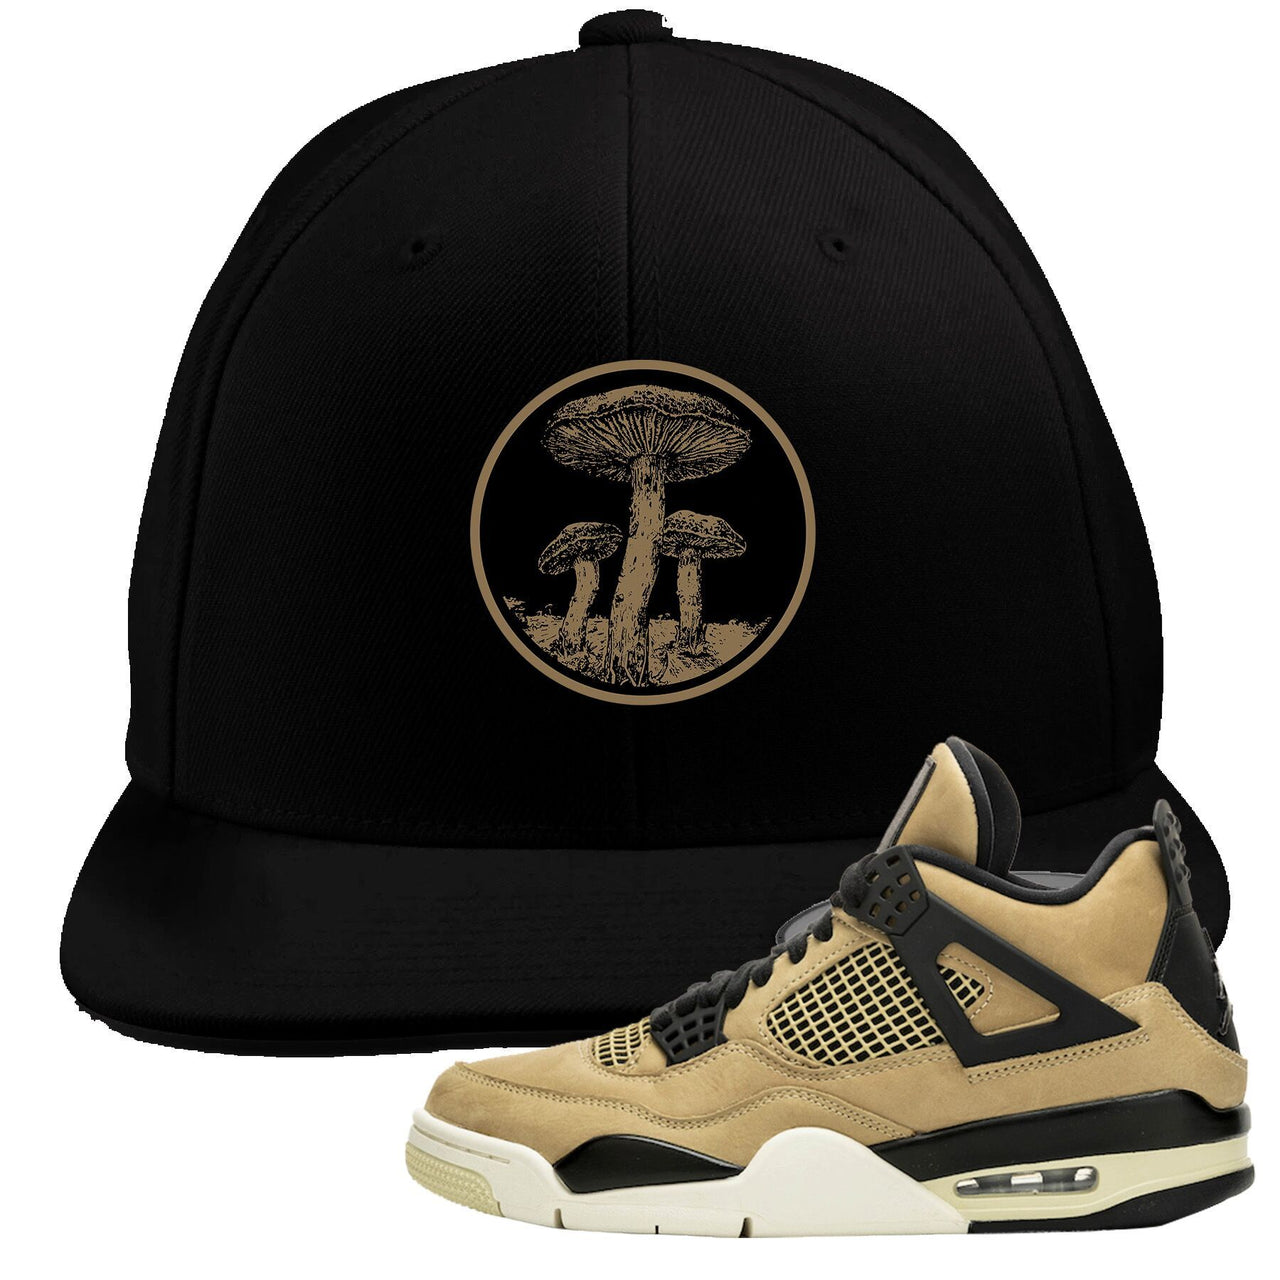 Jordan 4 WMNS Mushroom Sneaker Matching Black Mushroom Logo Snapback Hat